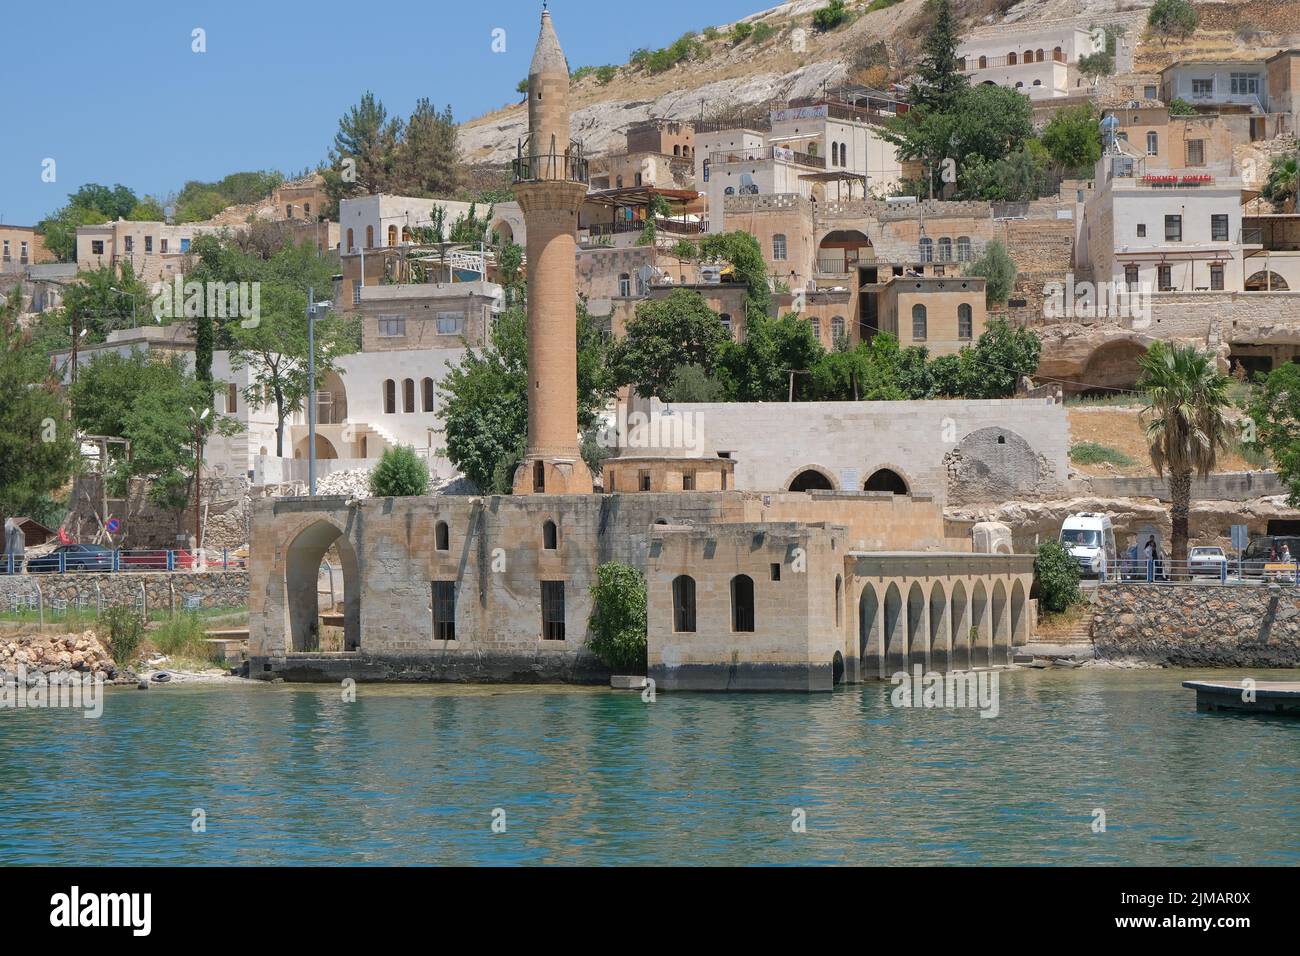 Grande moschea di Halfeti, nome locale di Halfeti Ulu Cami, moschea sommersa nelle acque del fiume eufrate. 07.14.2022. anlurfa. Turchia. Foto Stock